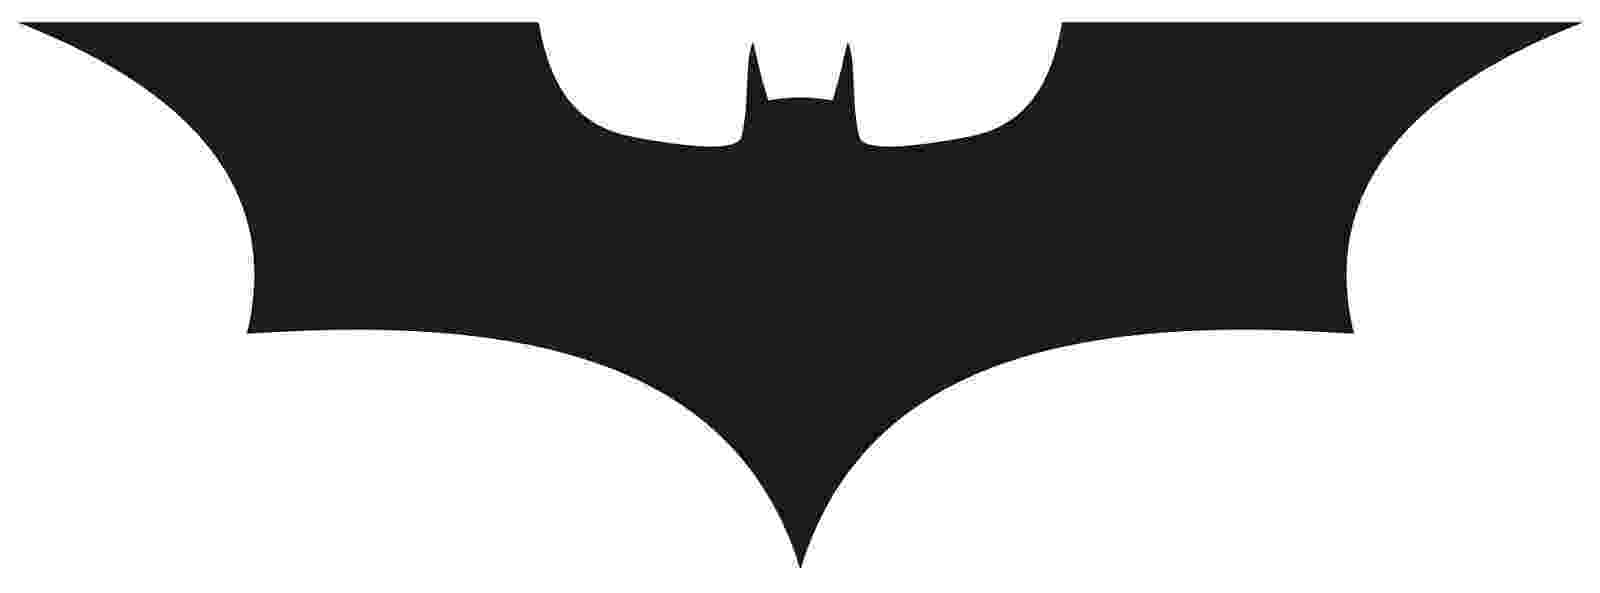 batman emblem printable batman symbol printable free printable batman coloring batman emblem printable 